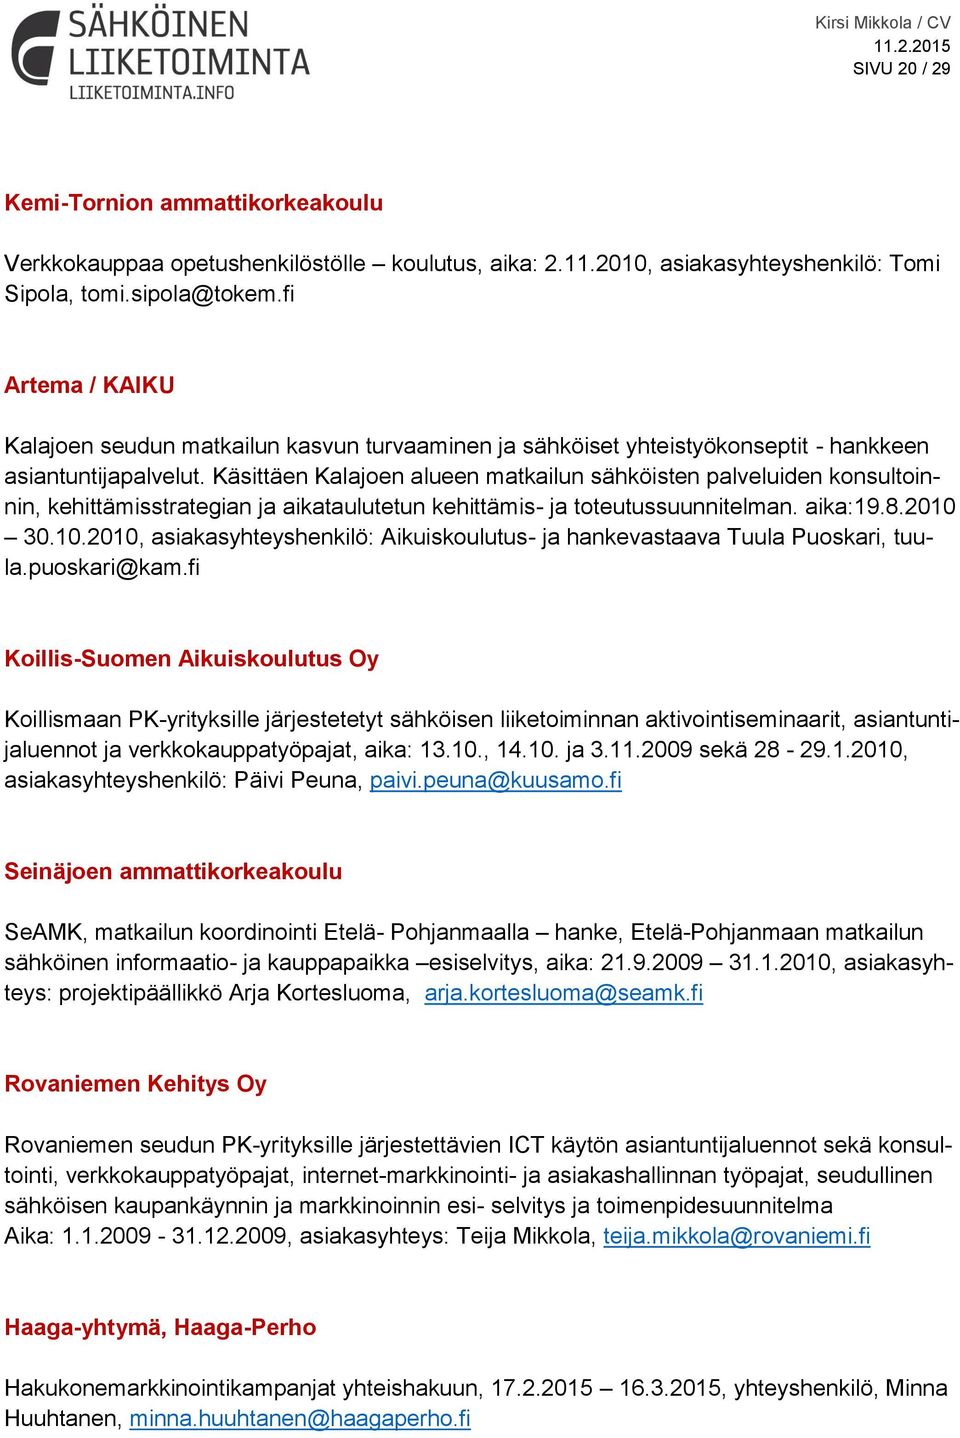 Käsittäen Kalajoen alueen matkailun sähköisten palveluiden konsultoinnin, kehittämisstrategian ja aikataulutetun kehittämis- ja toteutussuunnitelman. aika:19.8.2010 